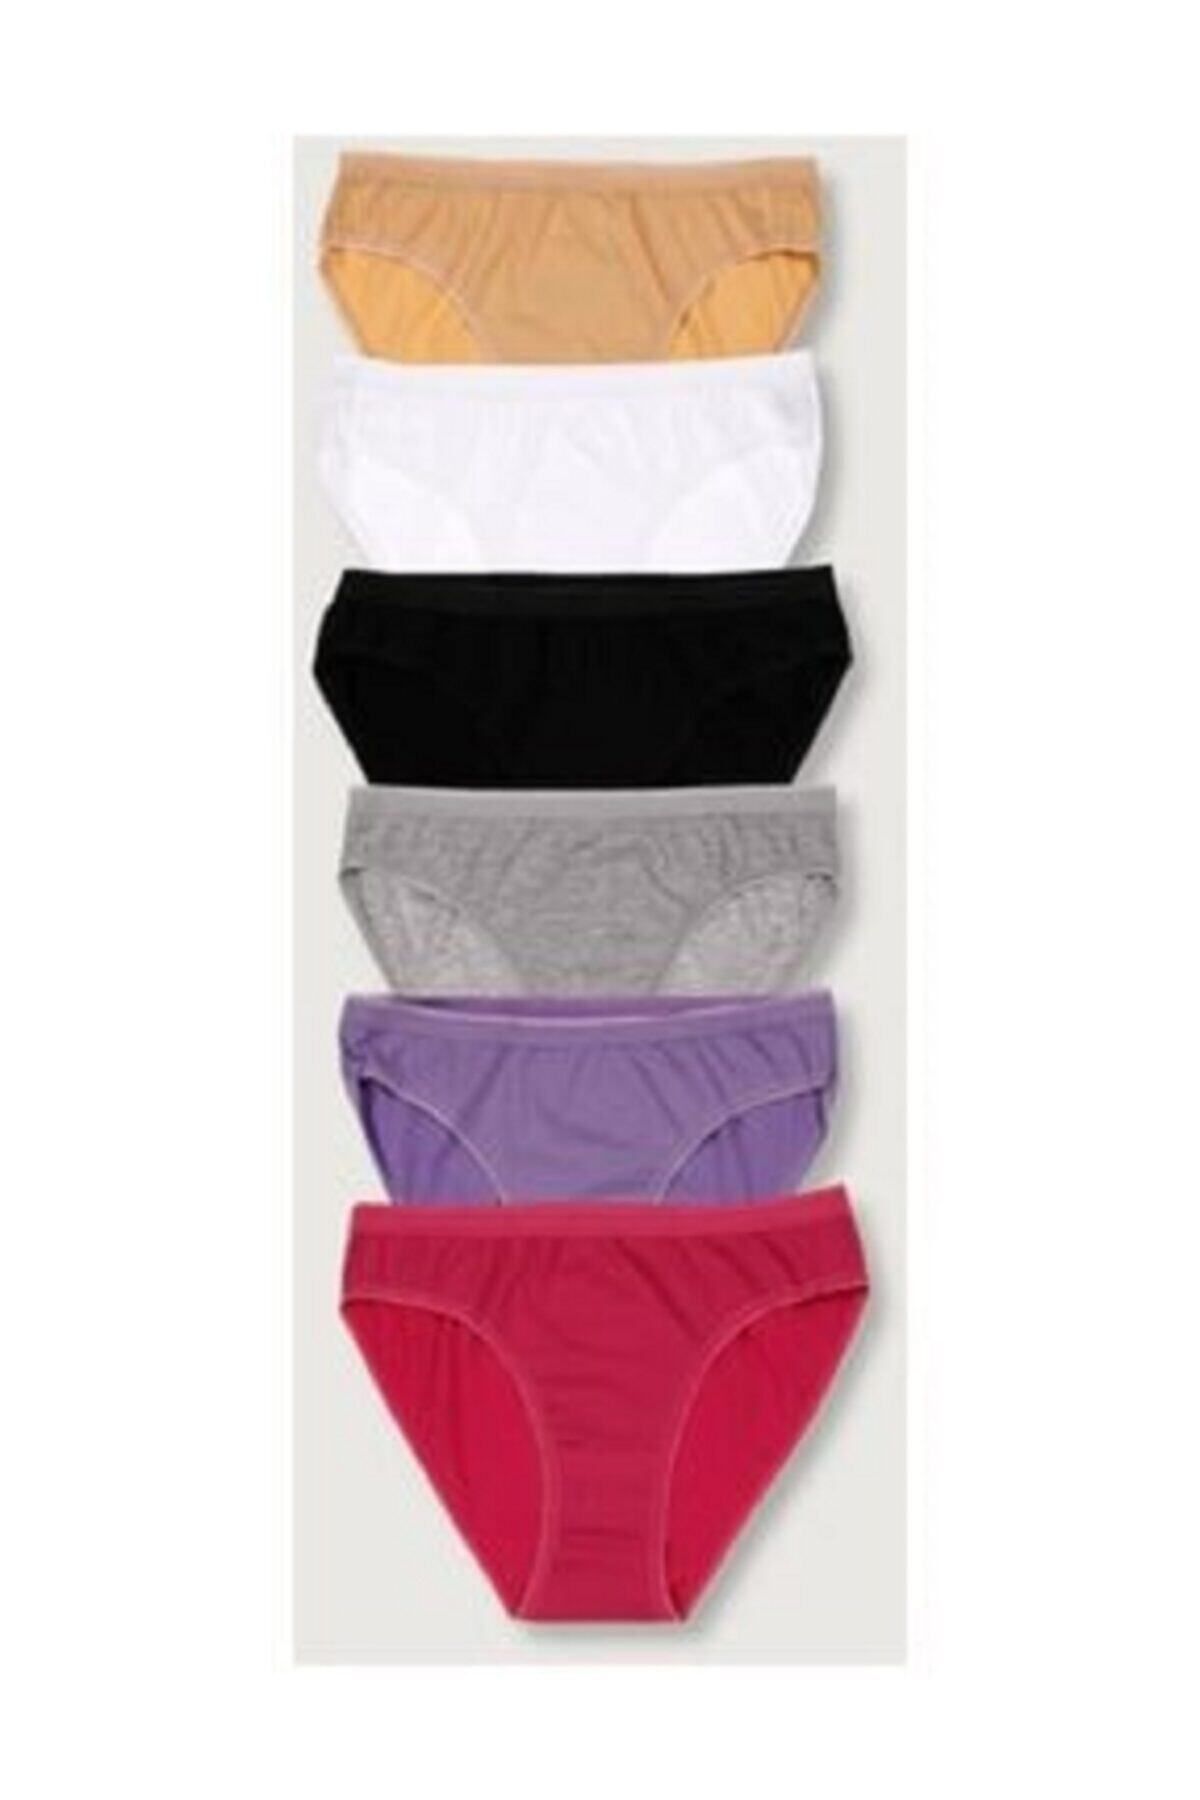 Tutku Kadın Karışık Renk 6'lı Paket Bikini Külot Elf568t0635ccm6 Karışık Renk Tek Ebat